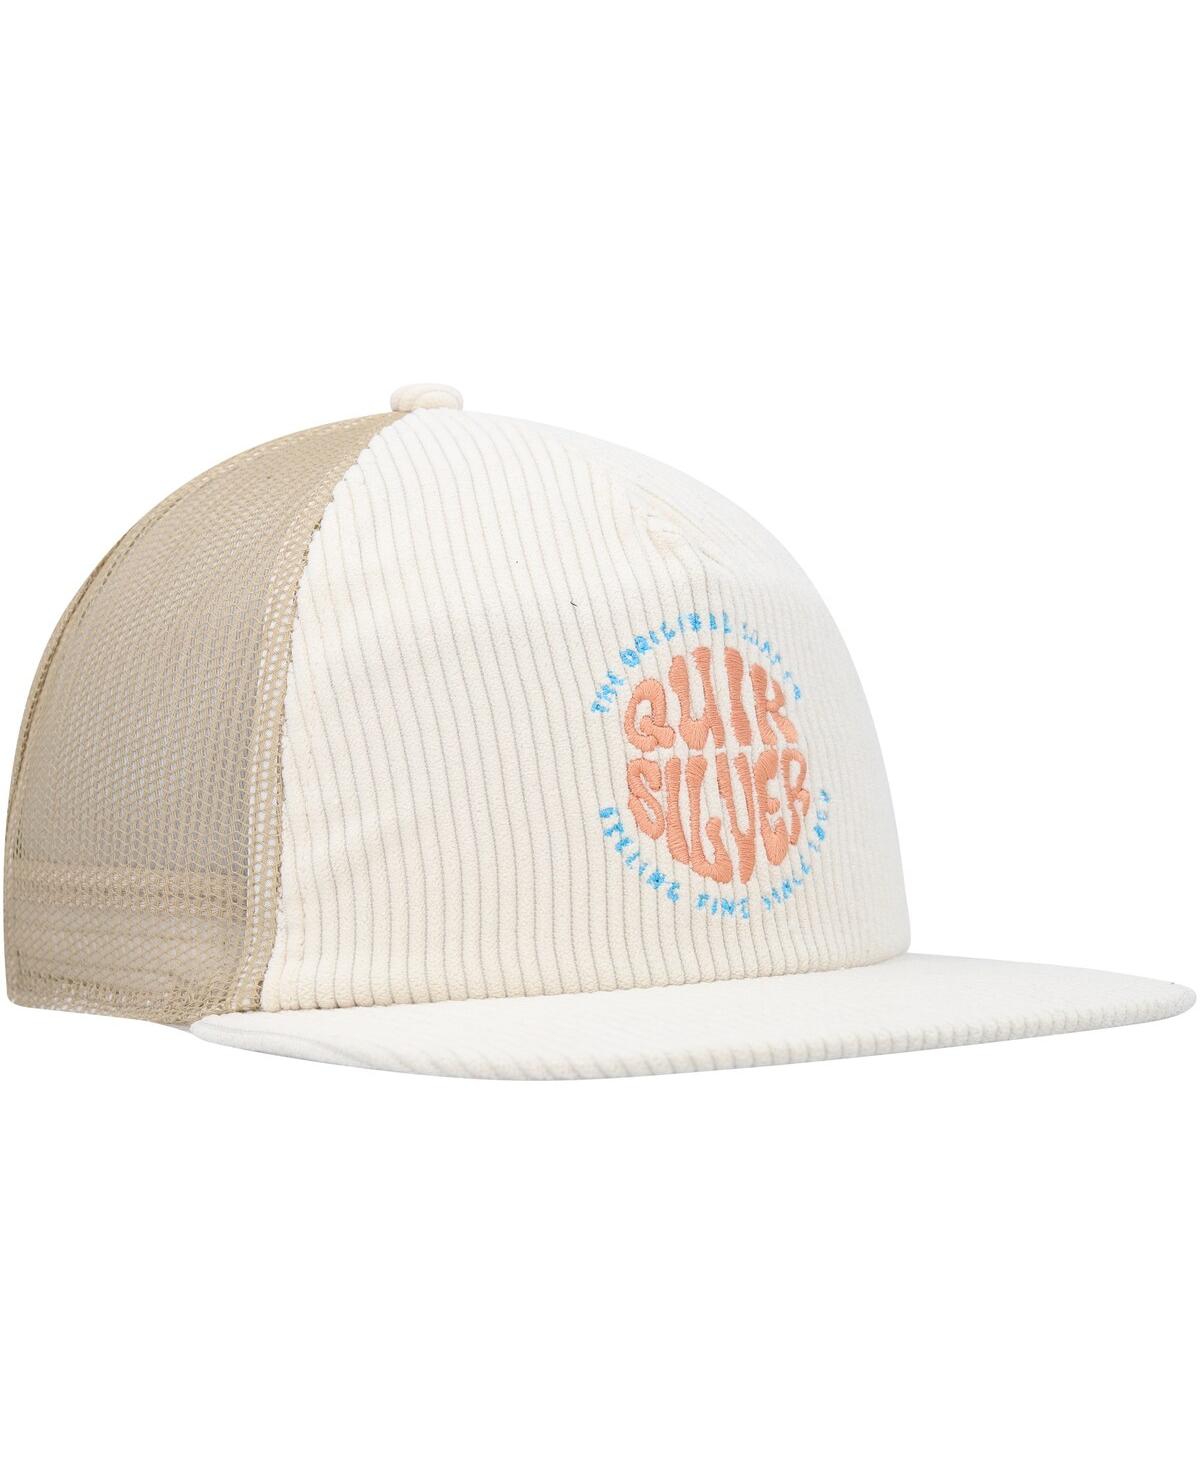 Shop Quiksilver Men's  Cream Coasteeze Trucker Snapback Hat